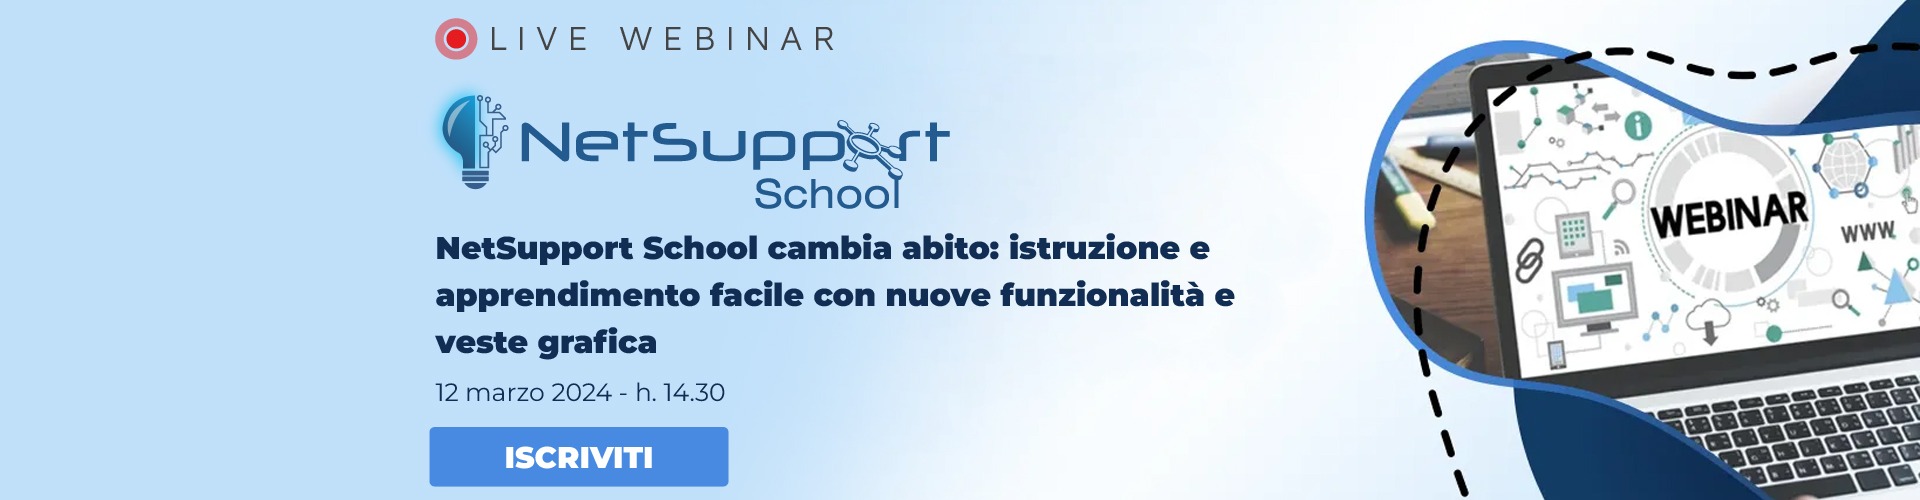 NetSupport School | Bludis | Webinar